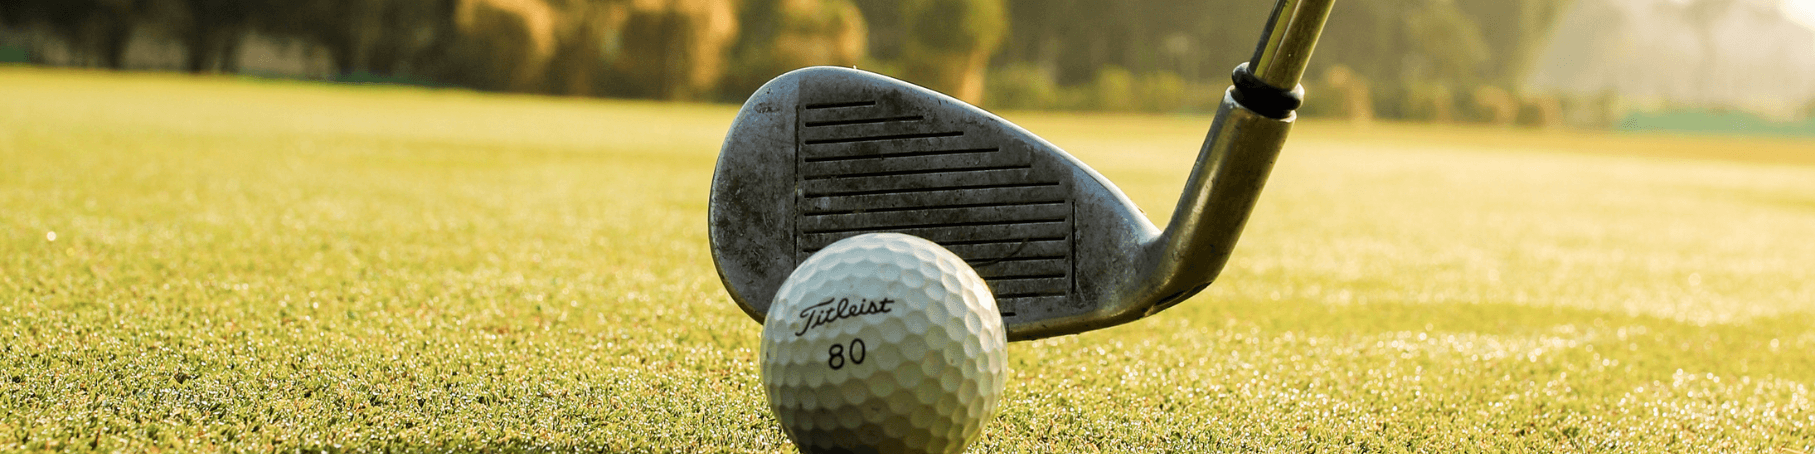 Golf_sportski_vodič_prehrana_dodaci_gaz_nutrition